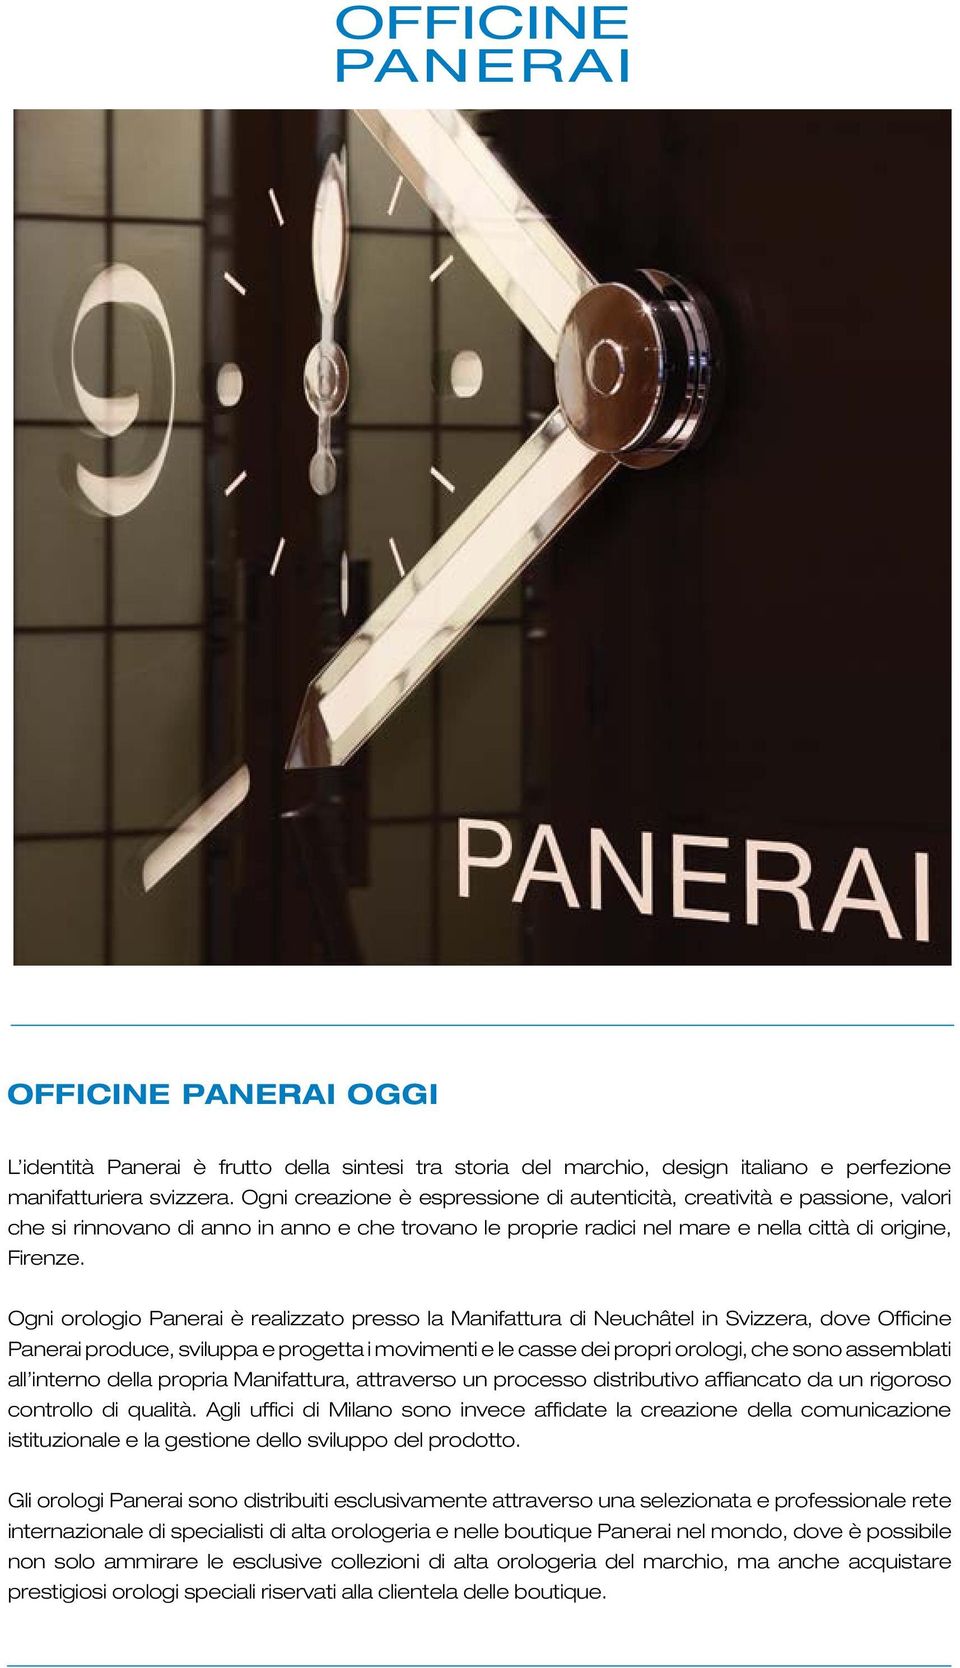 Ogni orologio Panerai è realizzato presso la Manifattura di Neuchâtel in Svizzera, dove Officine Panerai produce, sviluppa e progetta i movimenti e le casse dei propri orologi, che sono assemblati